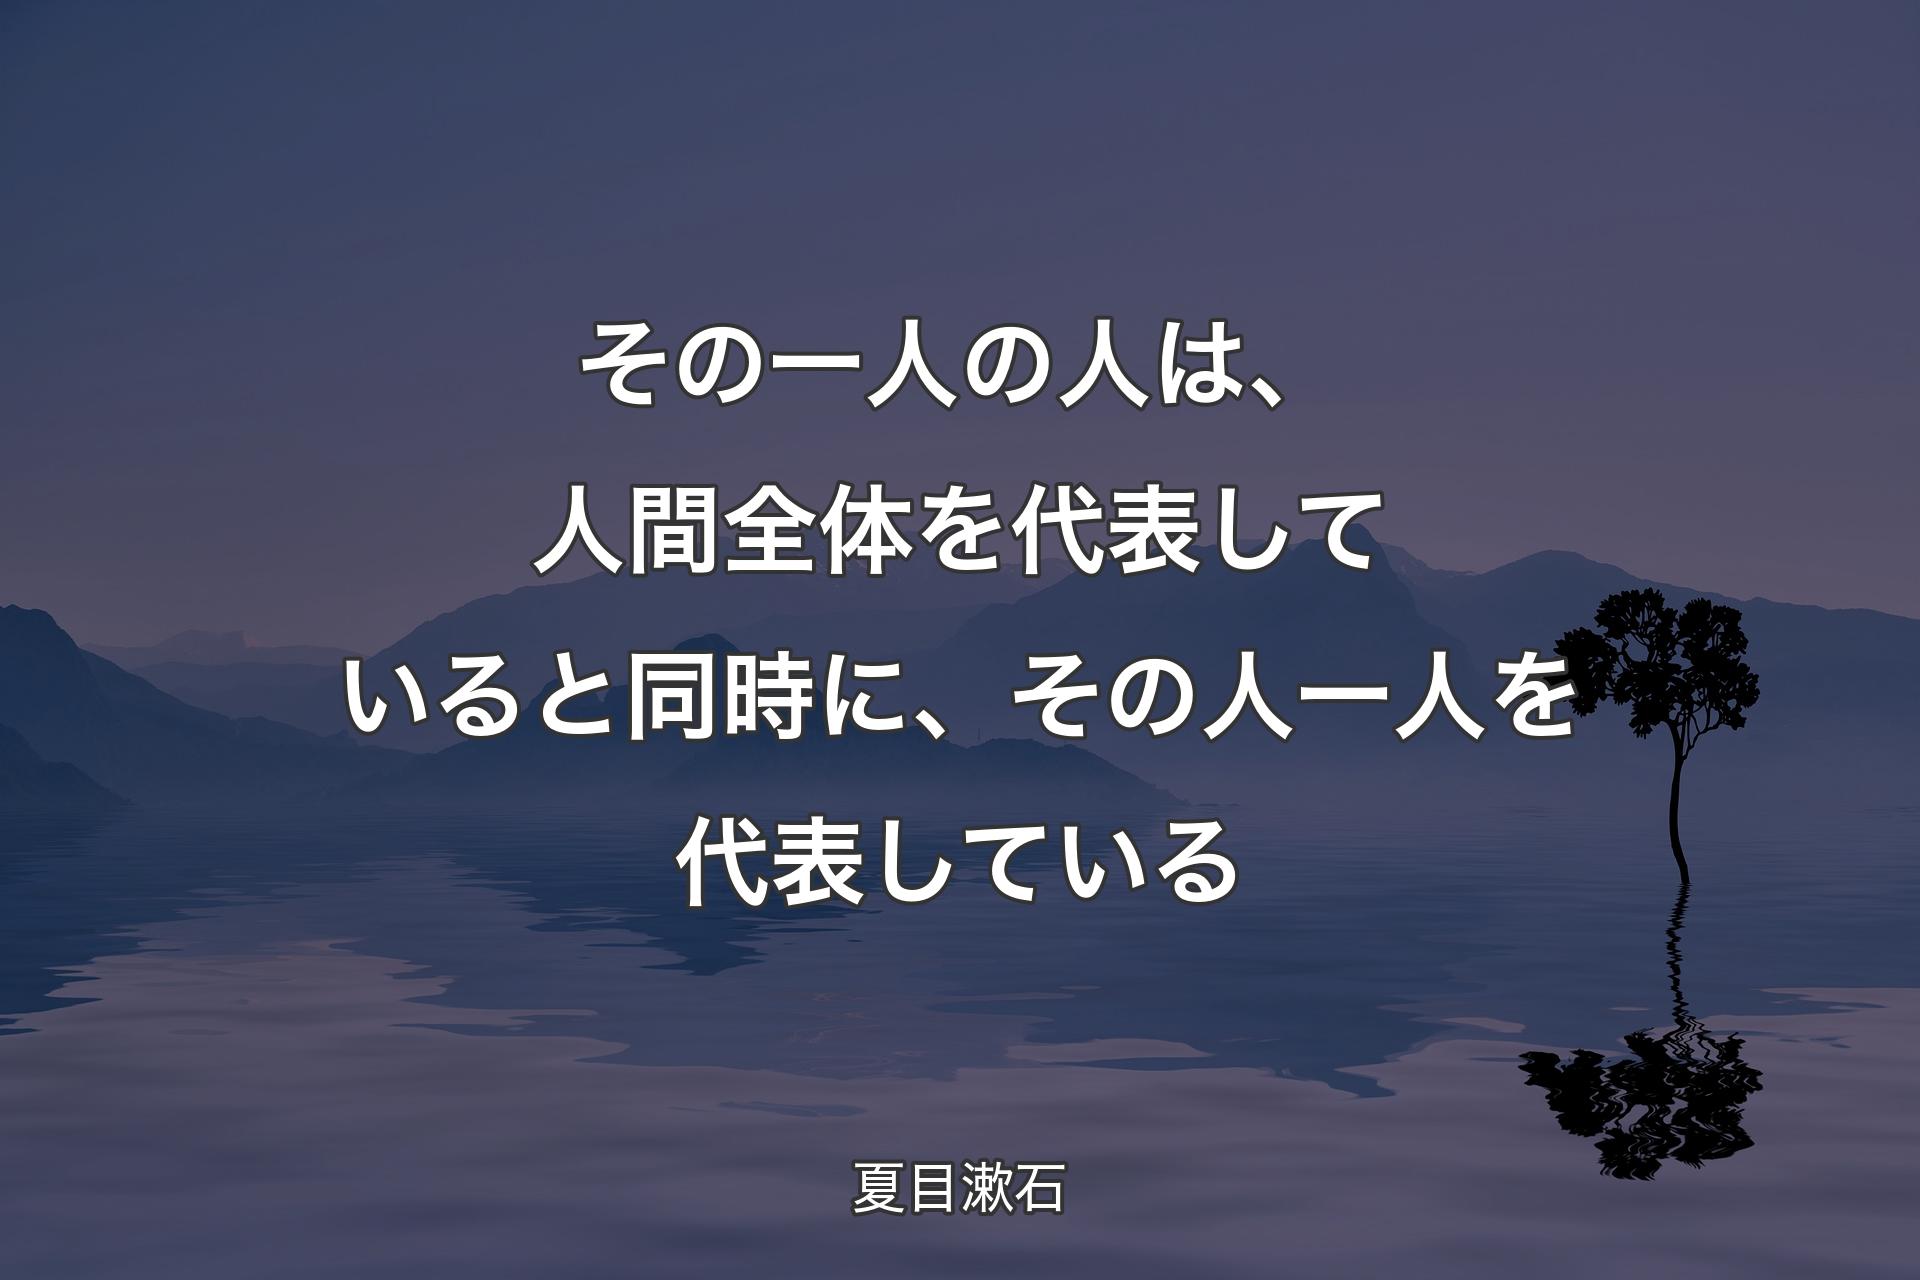 【背景4】その一人の人は、人間全体を代表していると同時に、その人一人を代表している - 夏目漱石